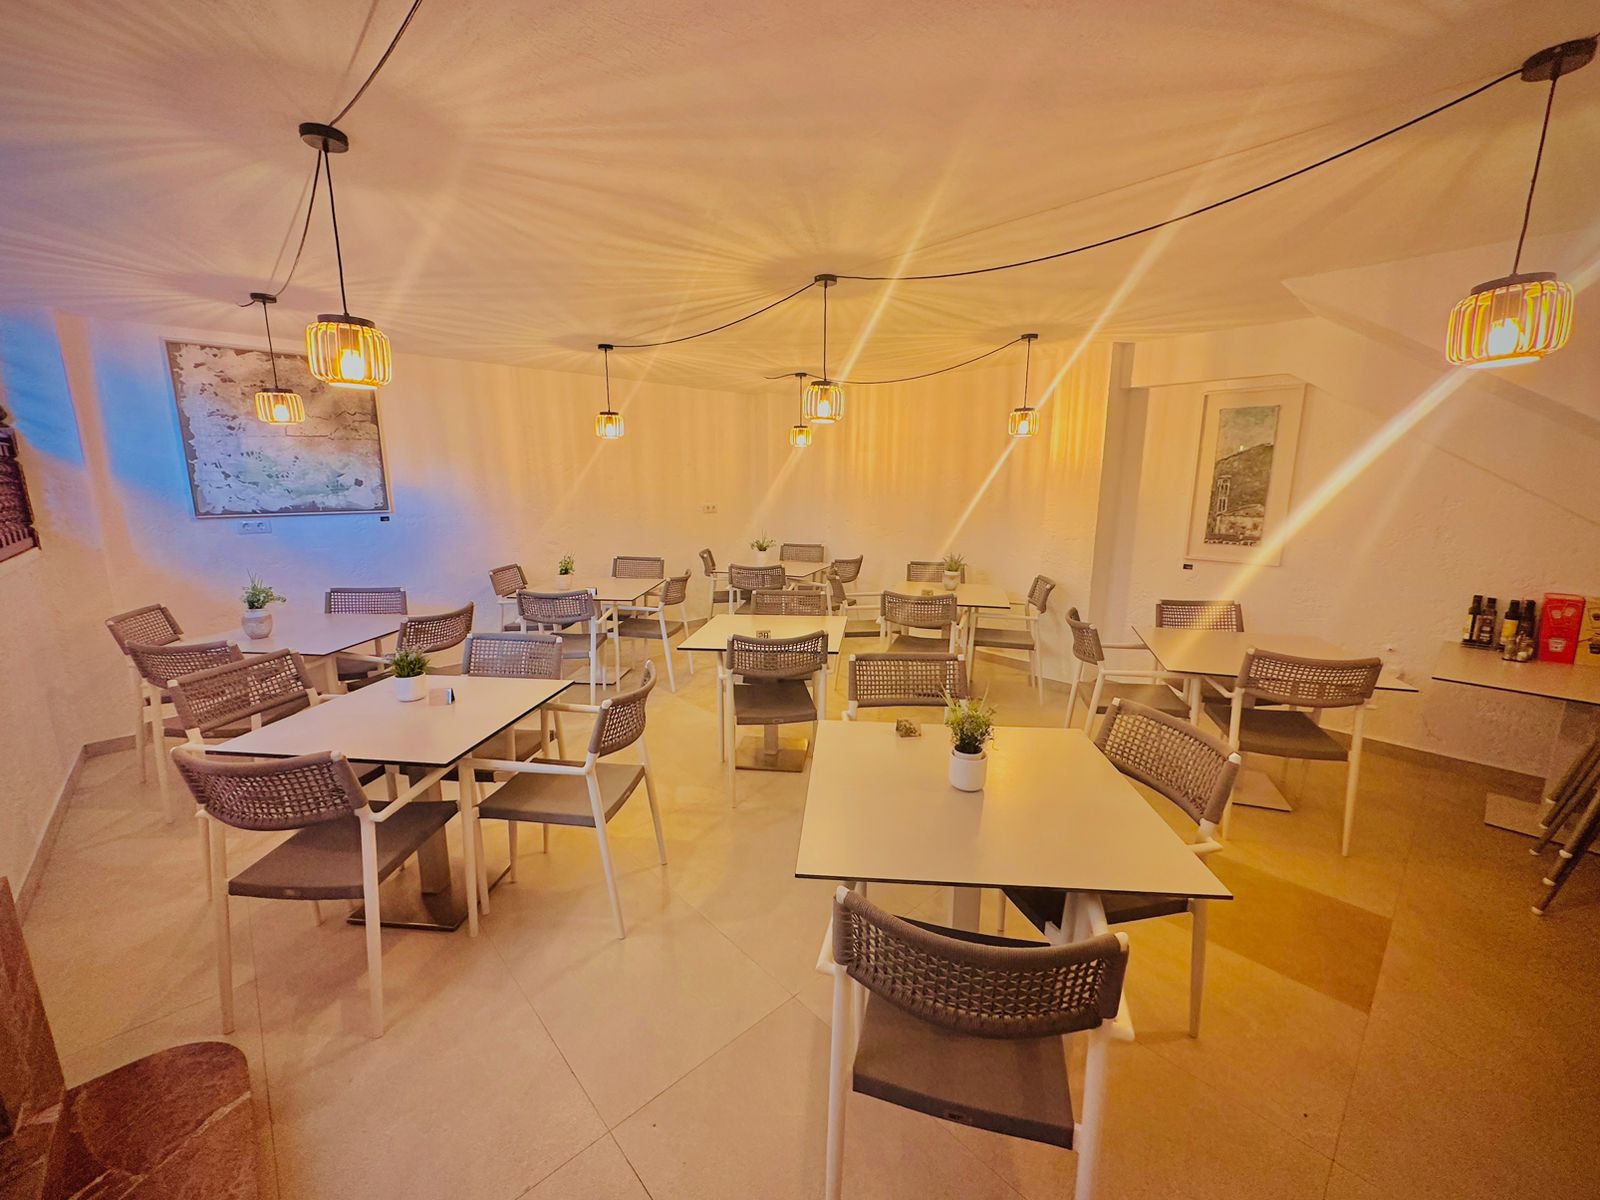 Images Restaurant Calvari Corner